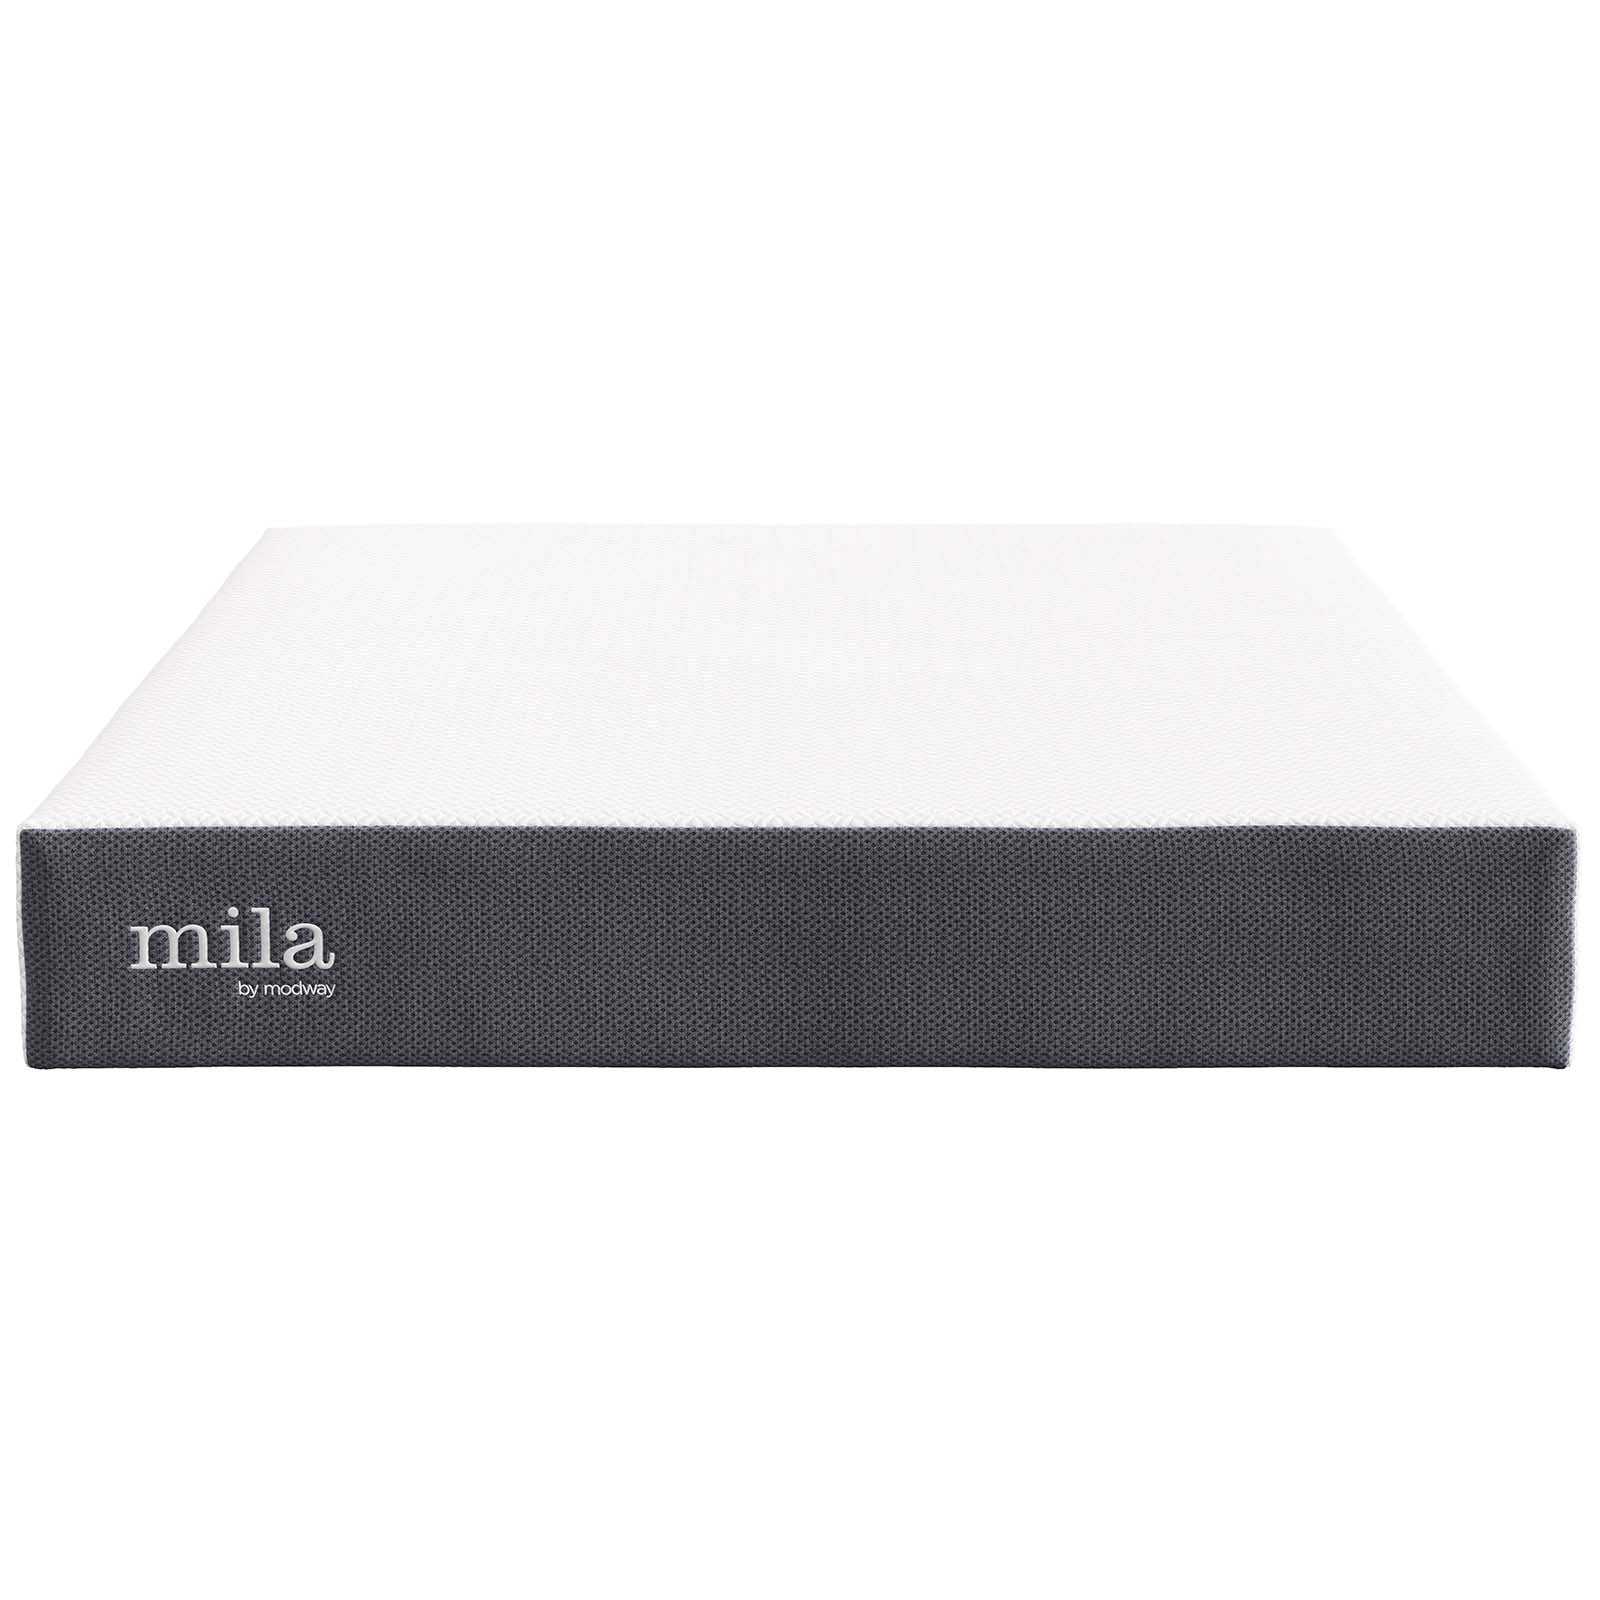 Mila Memory Foam Mattress-Mattress-Modway-Wall2Wall Furnishings